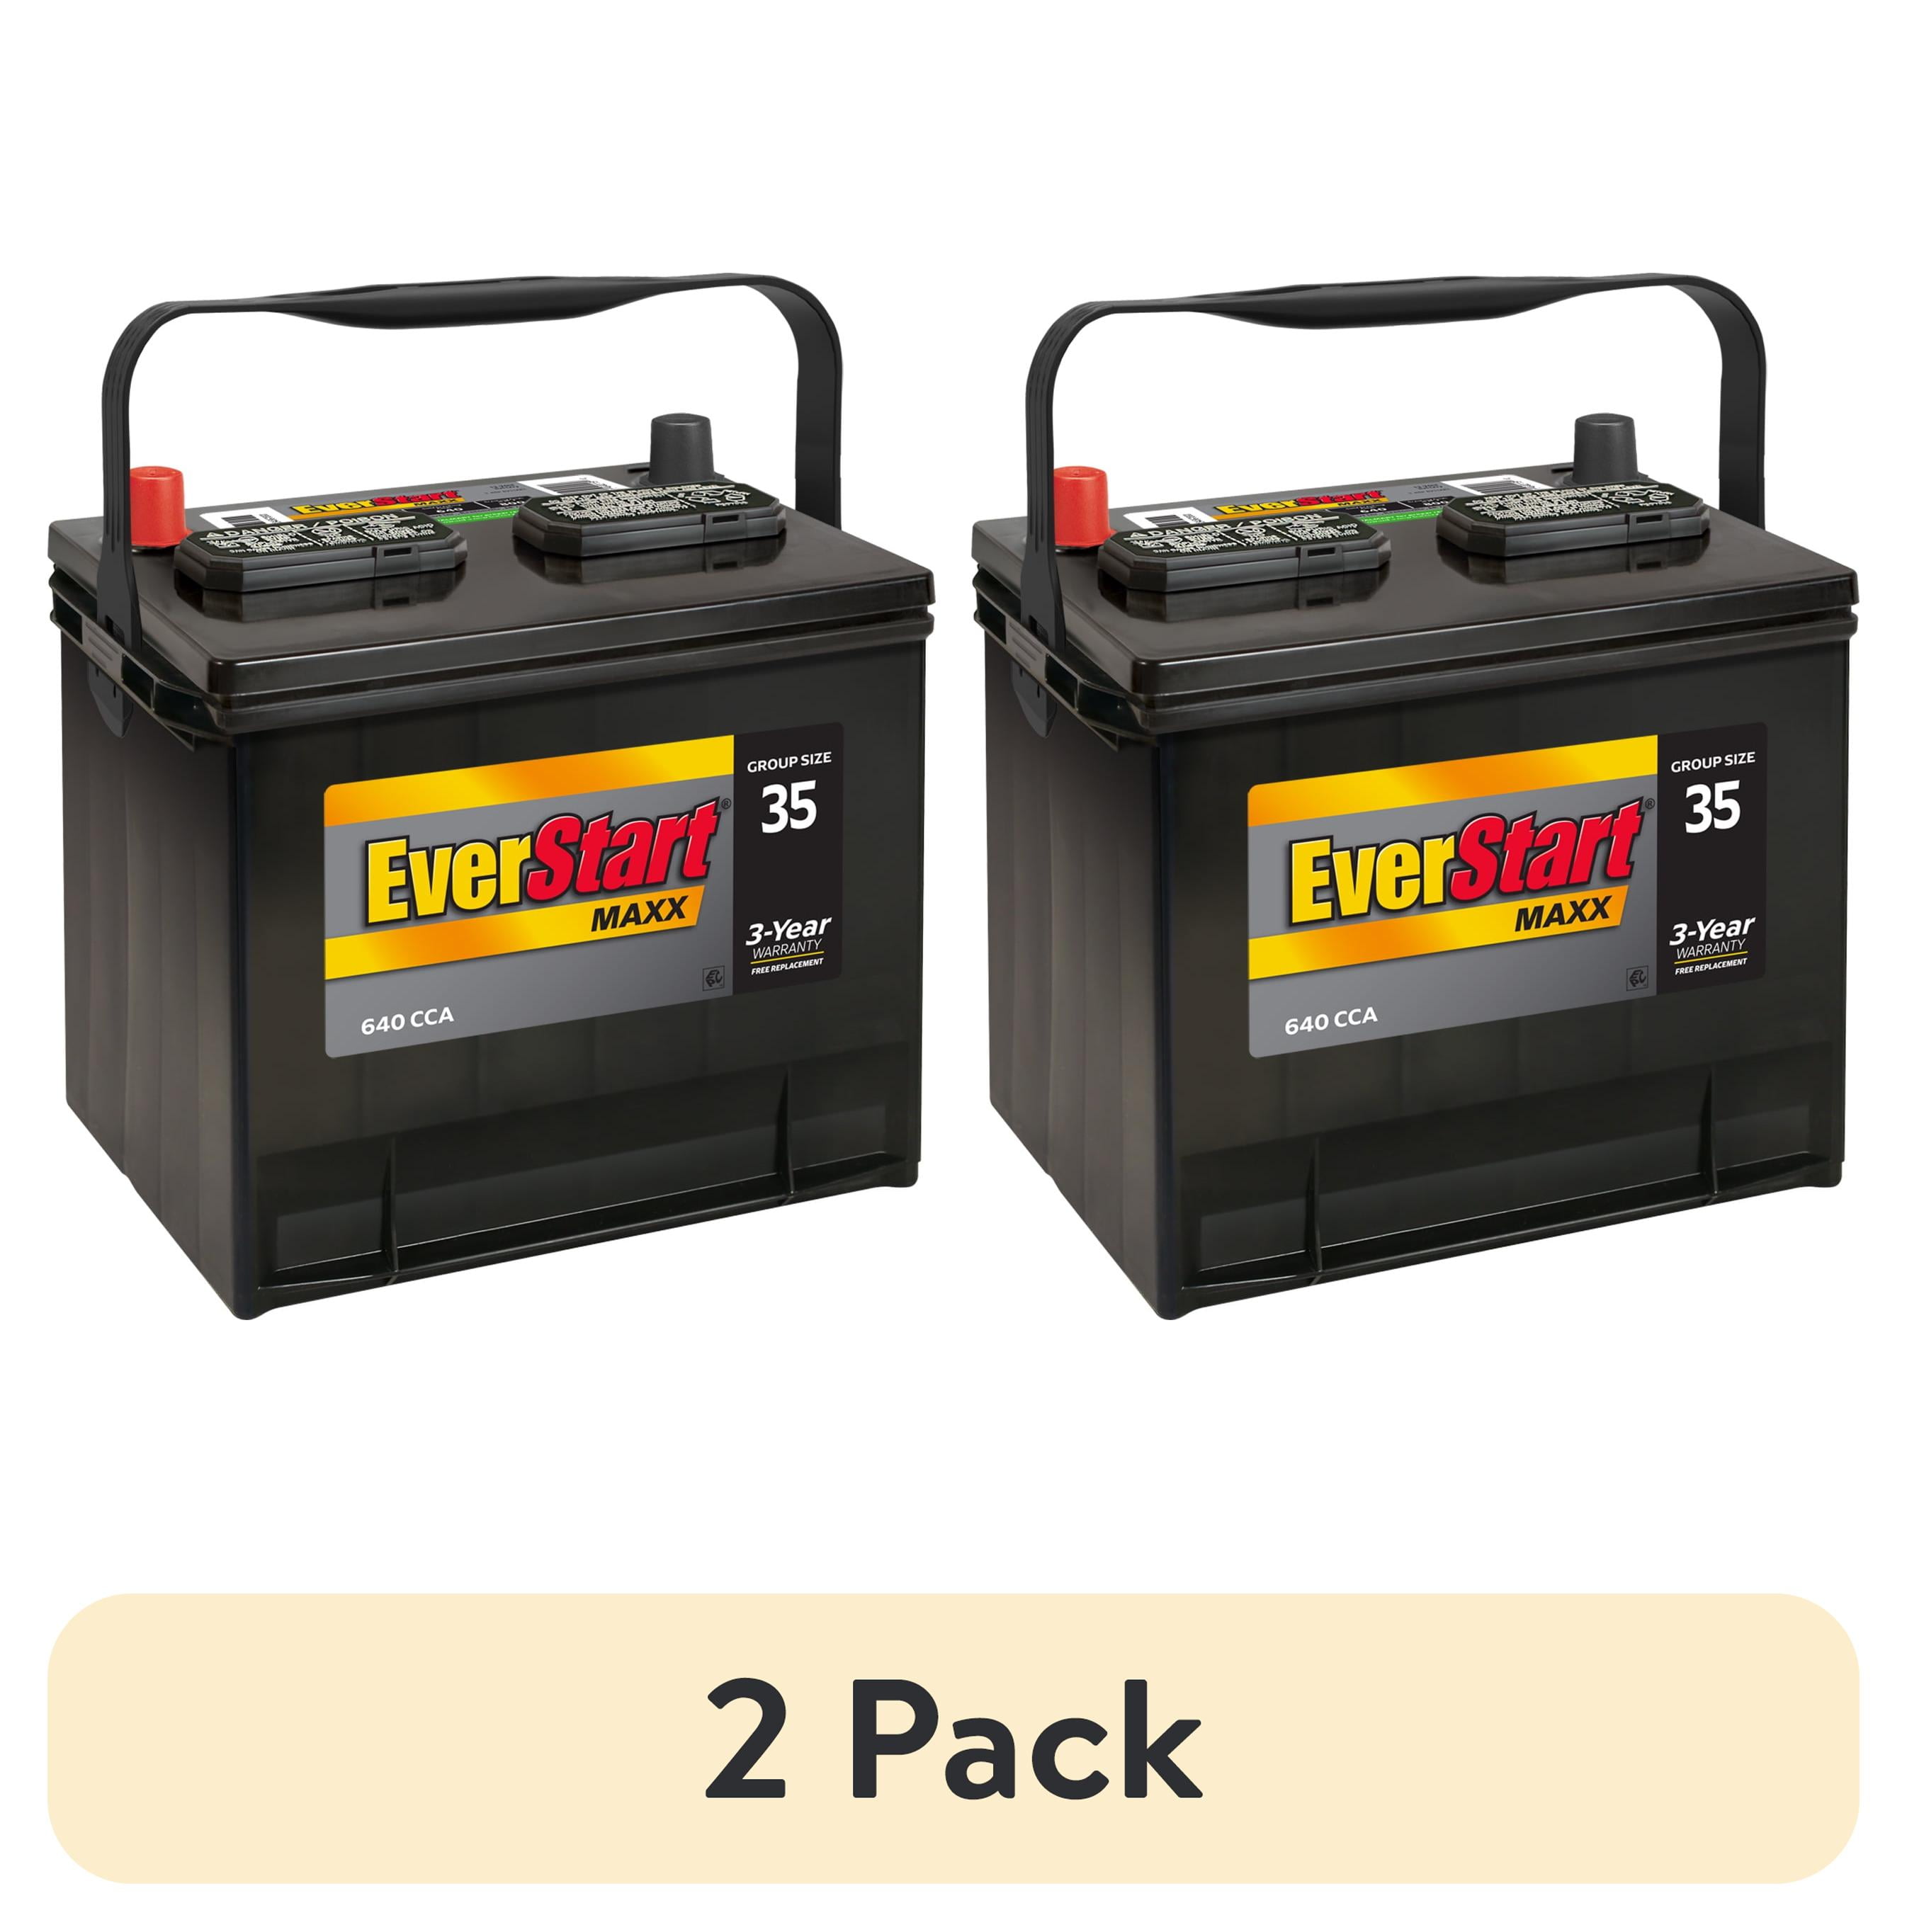 EverStart Maxx Lead Acid Automotive Battery, Group Size 35 12 Volt